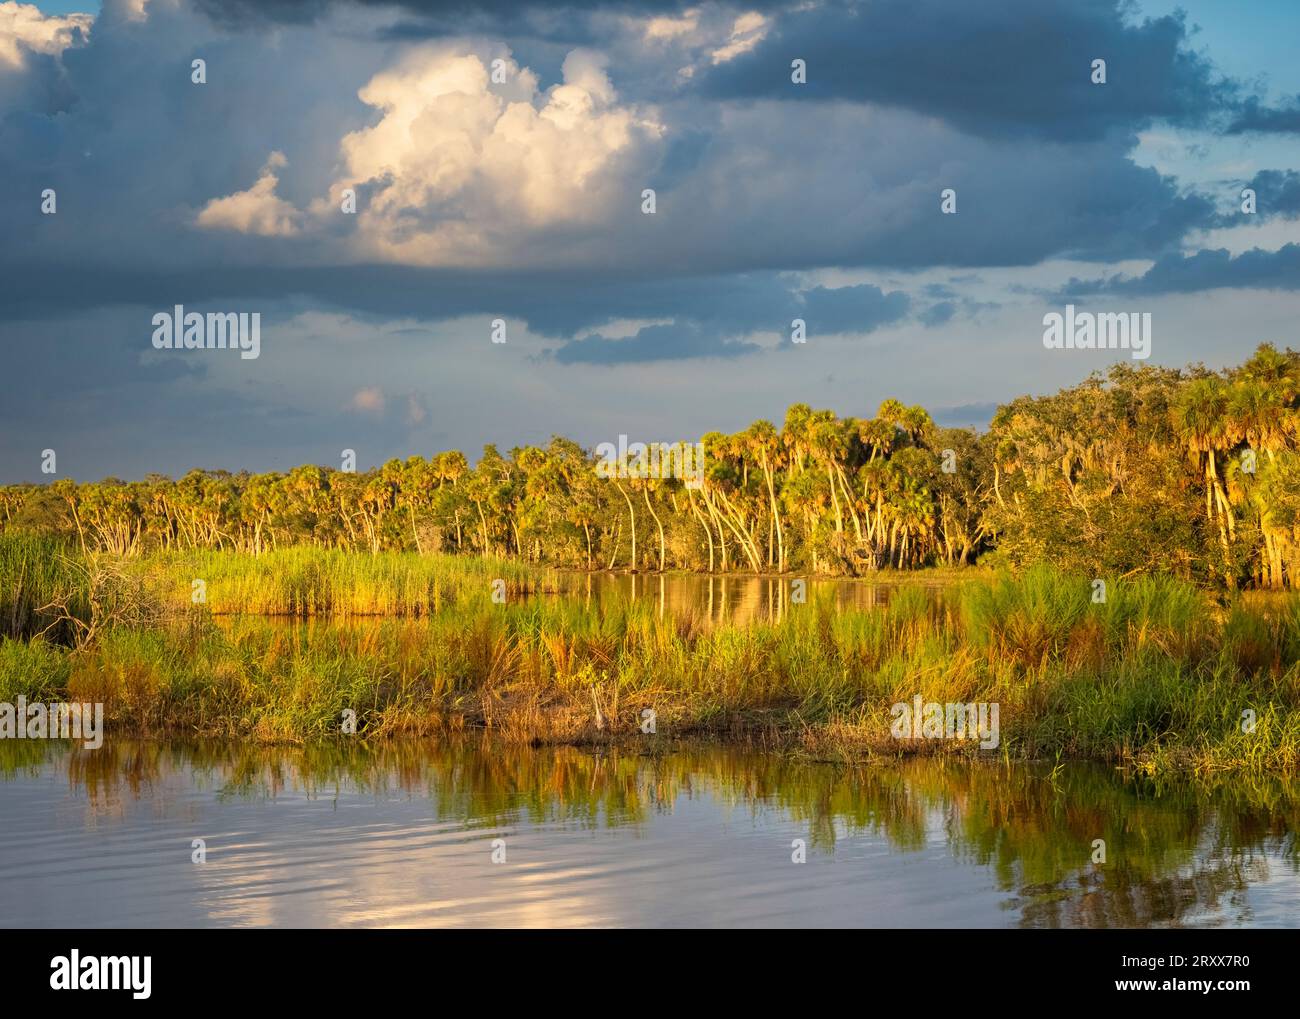 En fin d'après-midi, illuminez le rivage du lac supérieur Myakka dans le parc d'État de Myakka River à Sarasota Floride États-Unis Banque D'Images